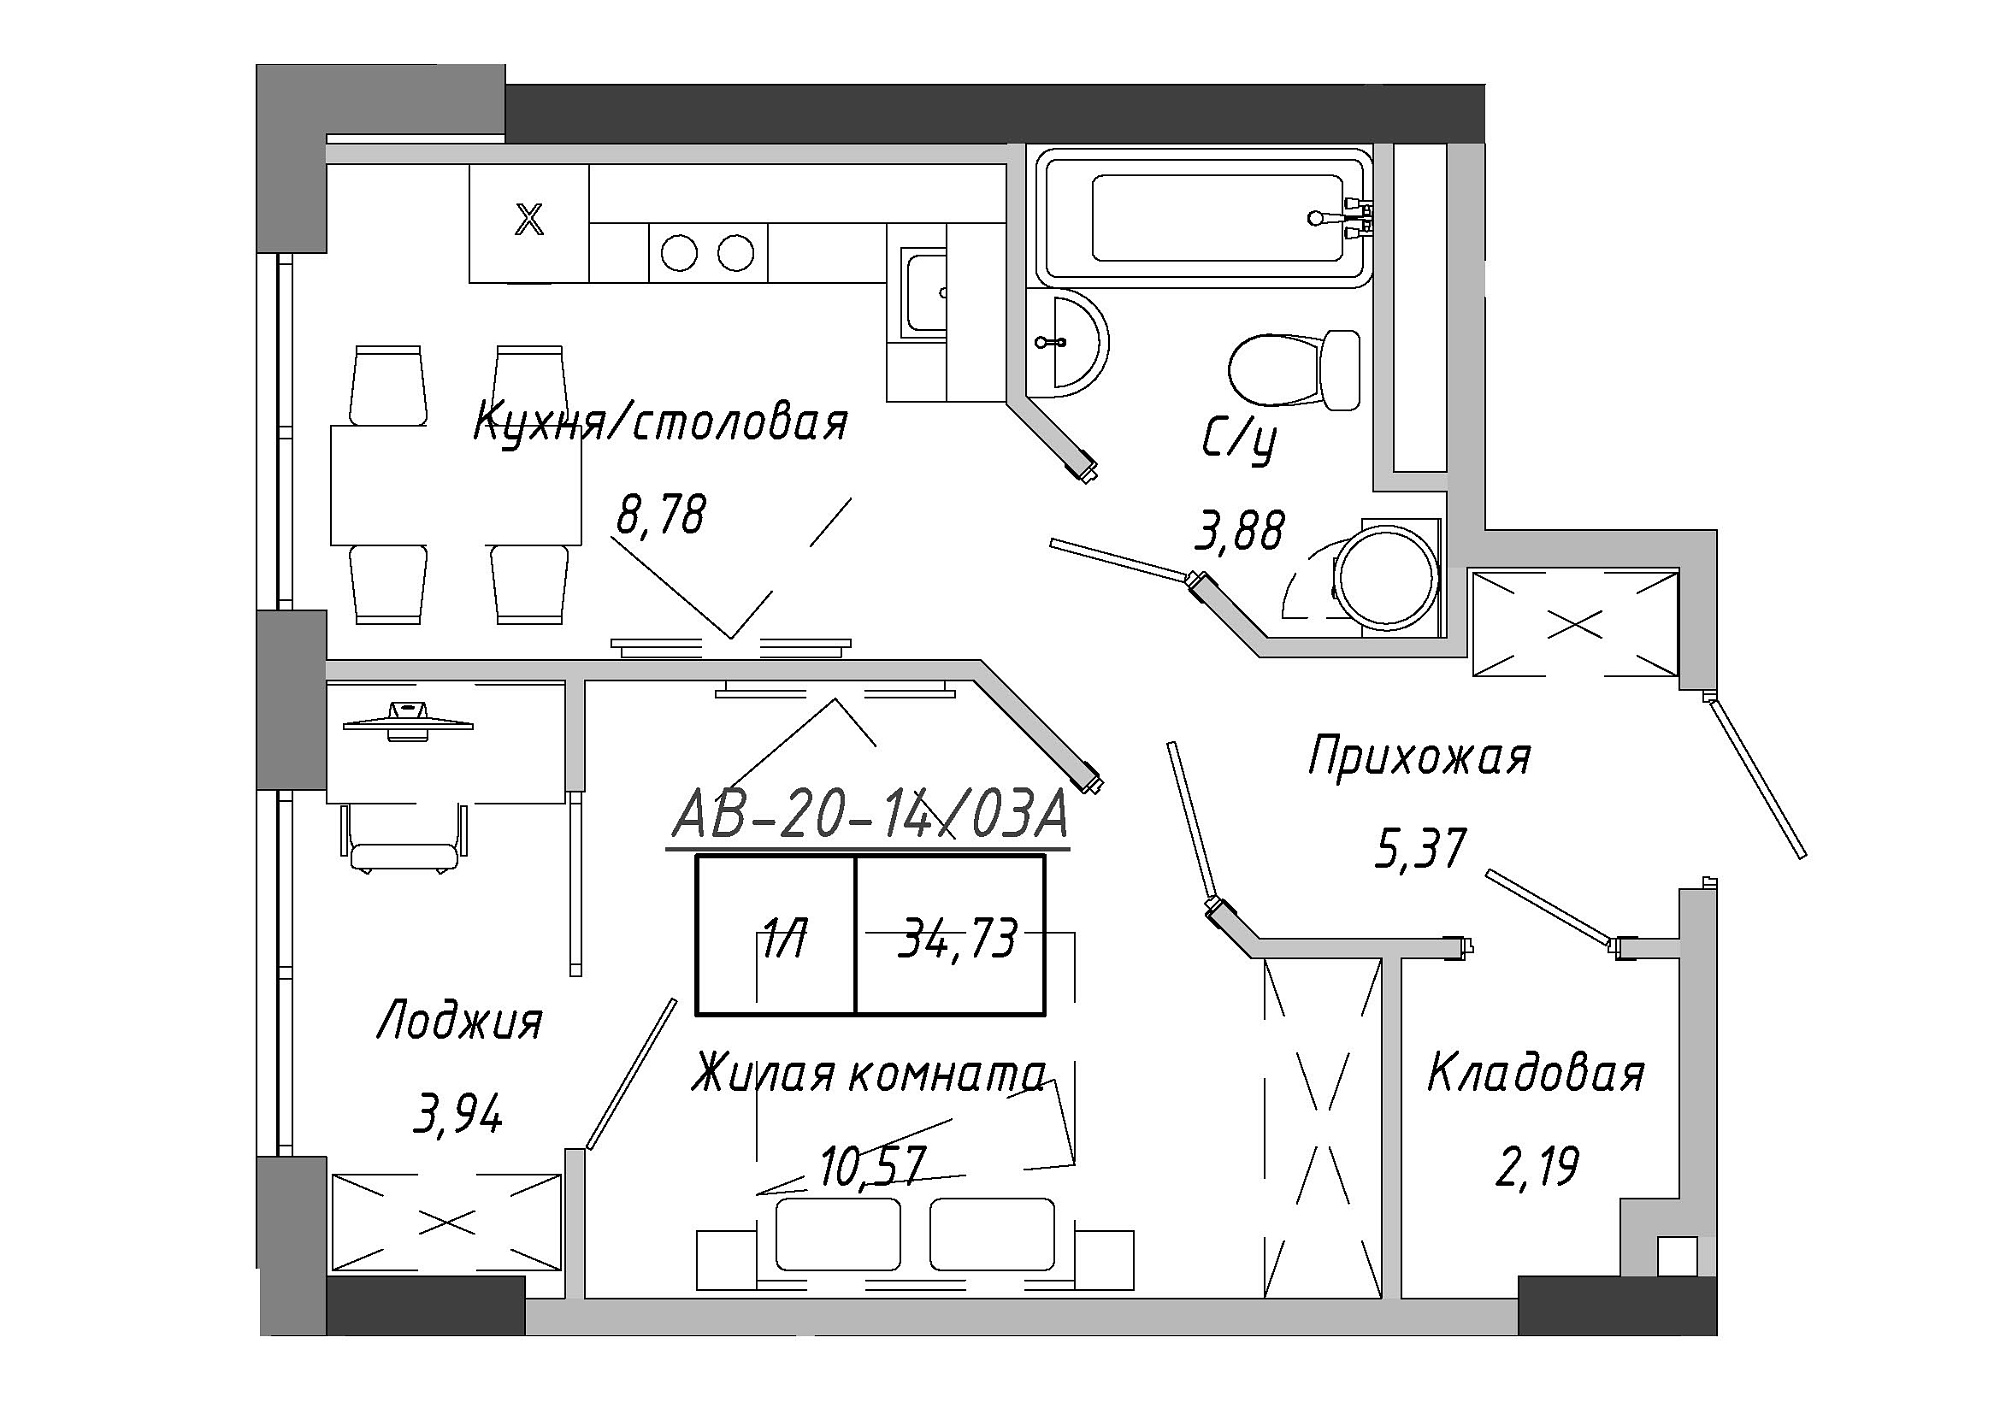 Планування 1-к квартира площею 34.73м2, AB-20-14/0103a.